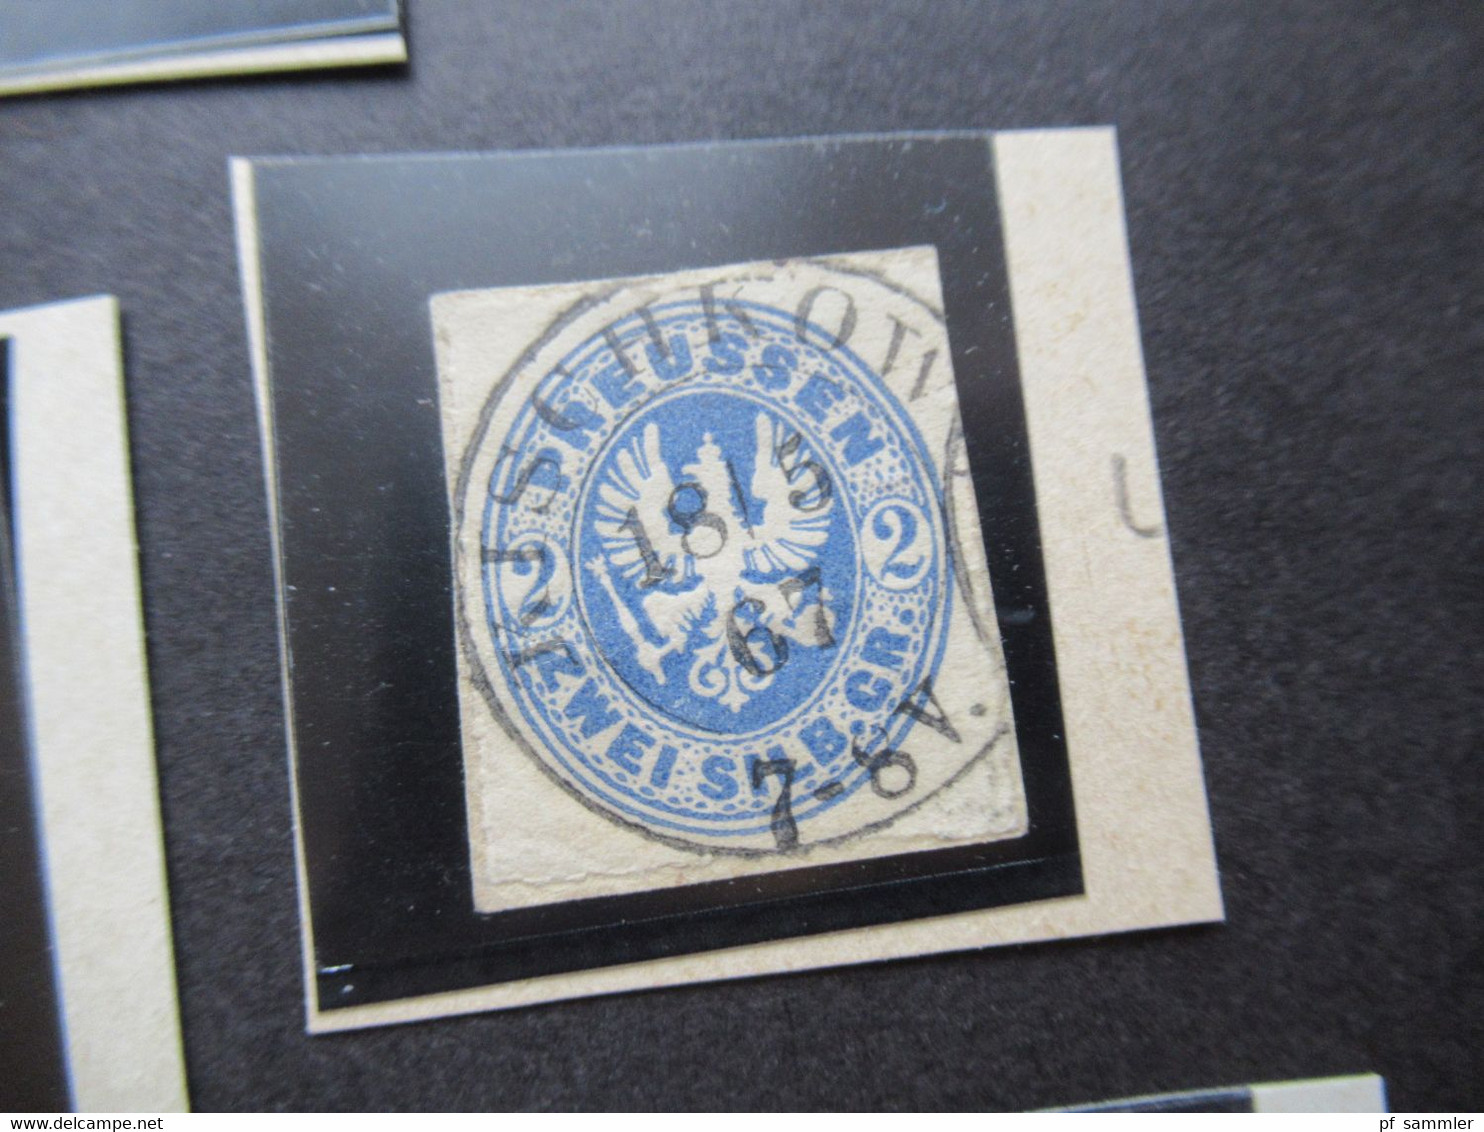 AD Preussen Preußischer Adler kleines Lot mit 11 Briefstücken mit teils sauberen Stempeln! Fundgrube / Stöberposten ??!